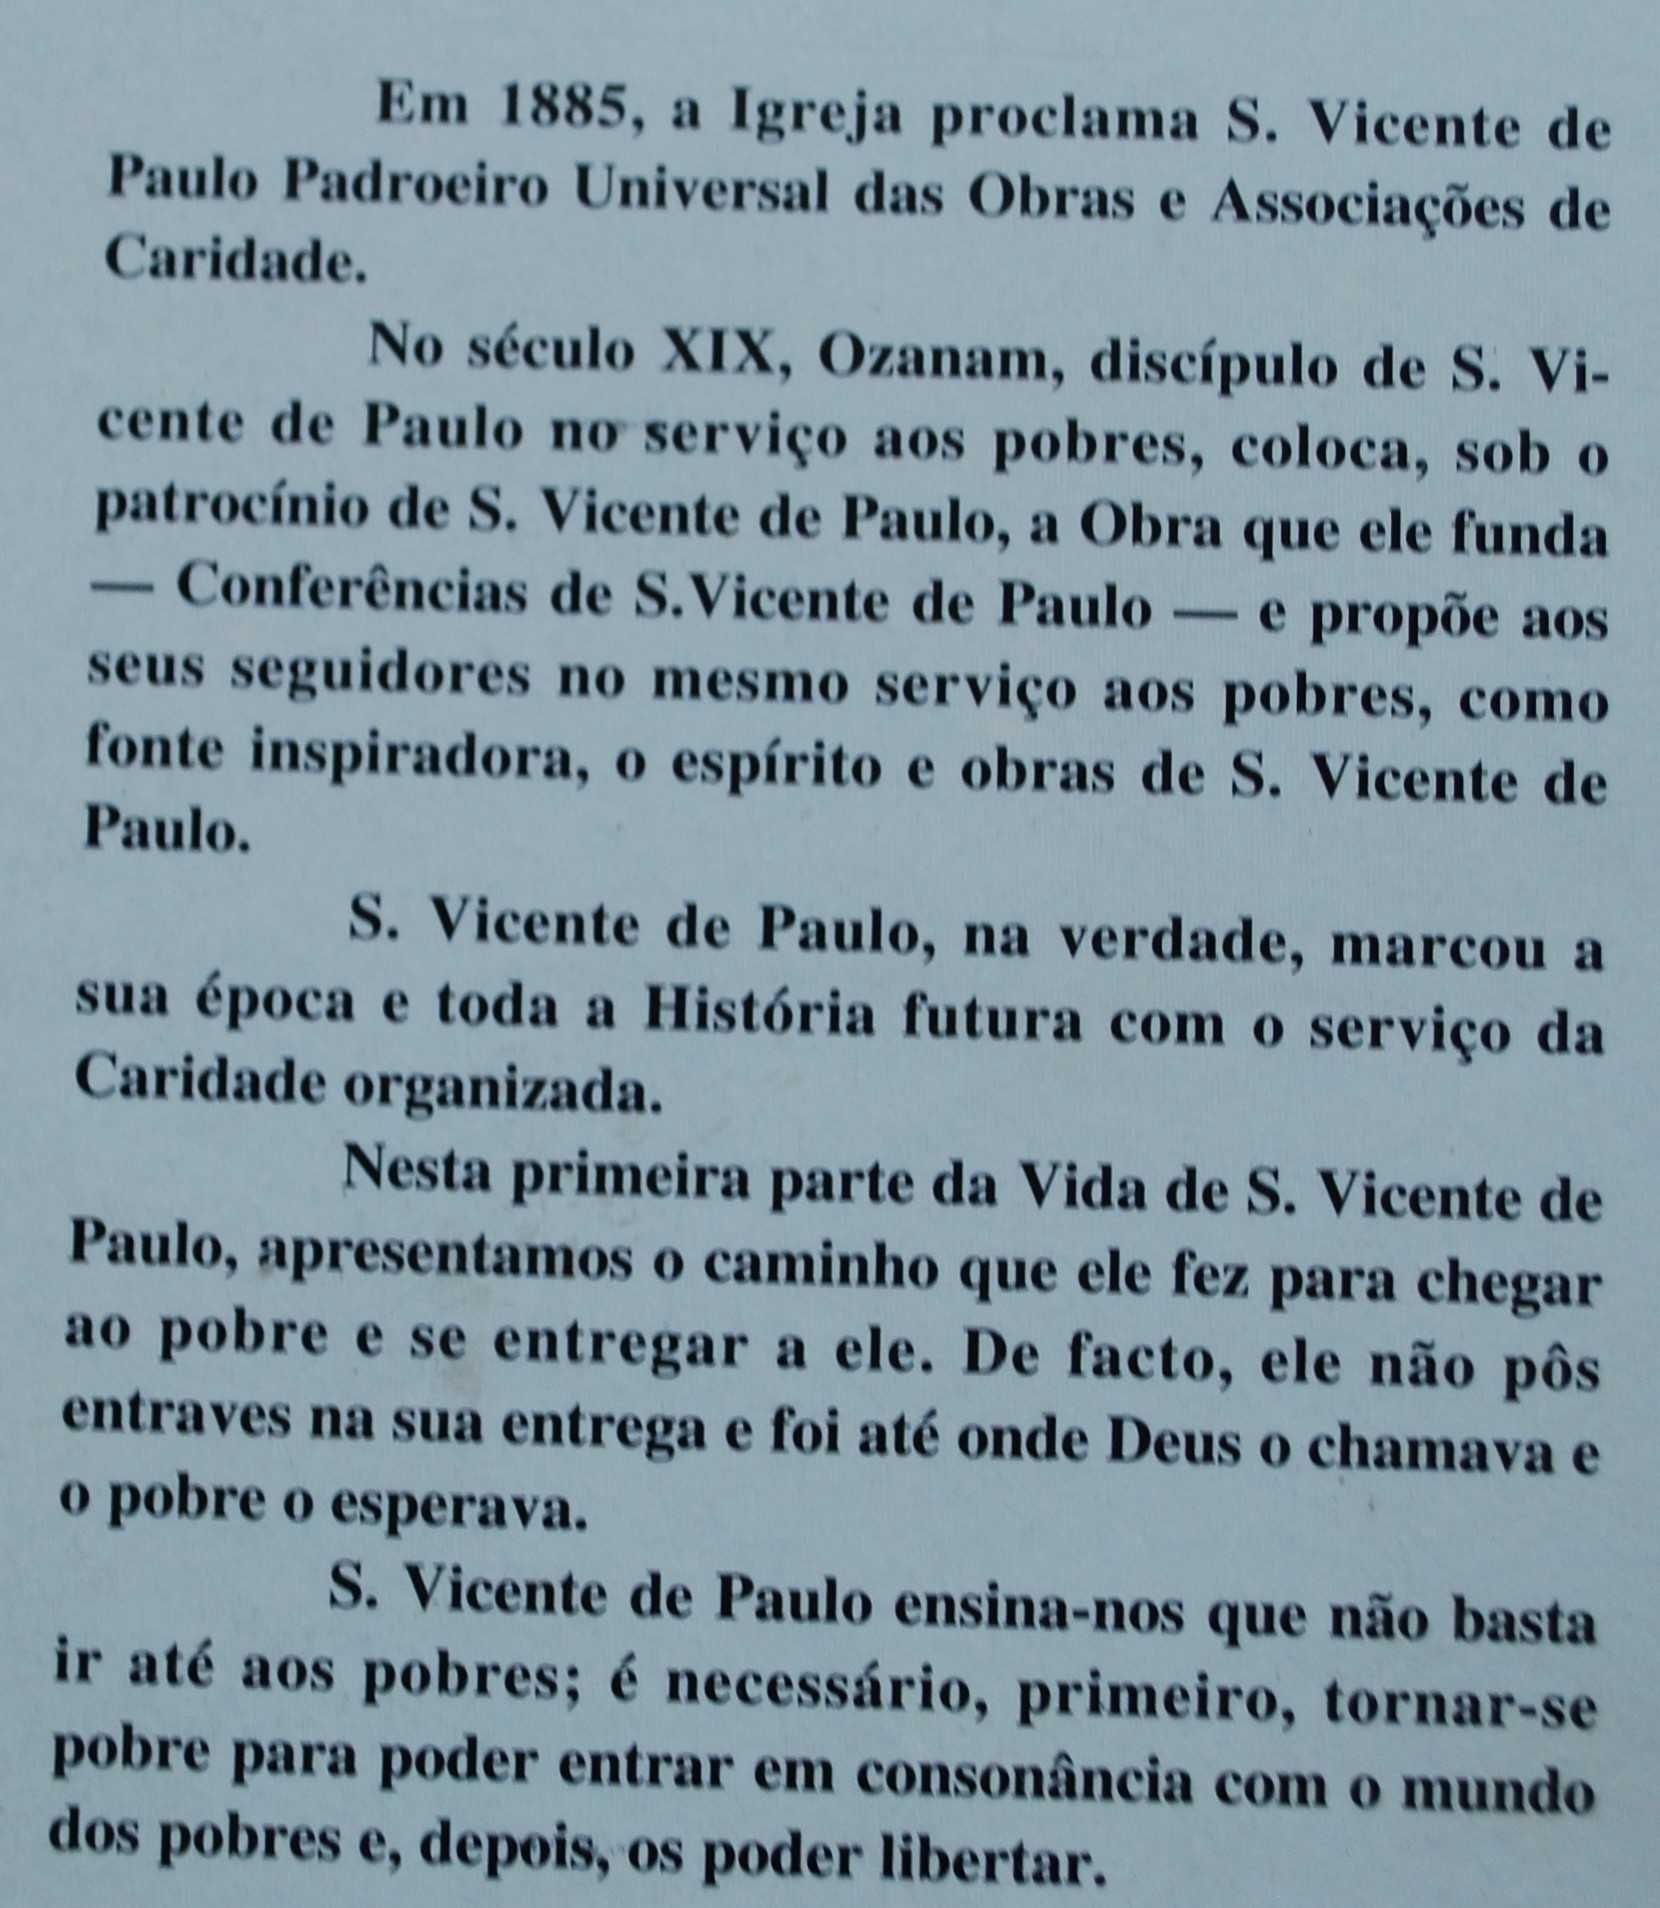 Vicente de Paulo (O Homem Que Aceitou Ir Até Onde O Homem O Esperava)